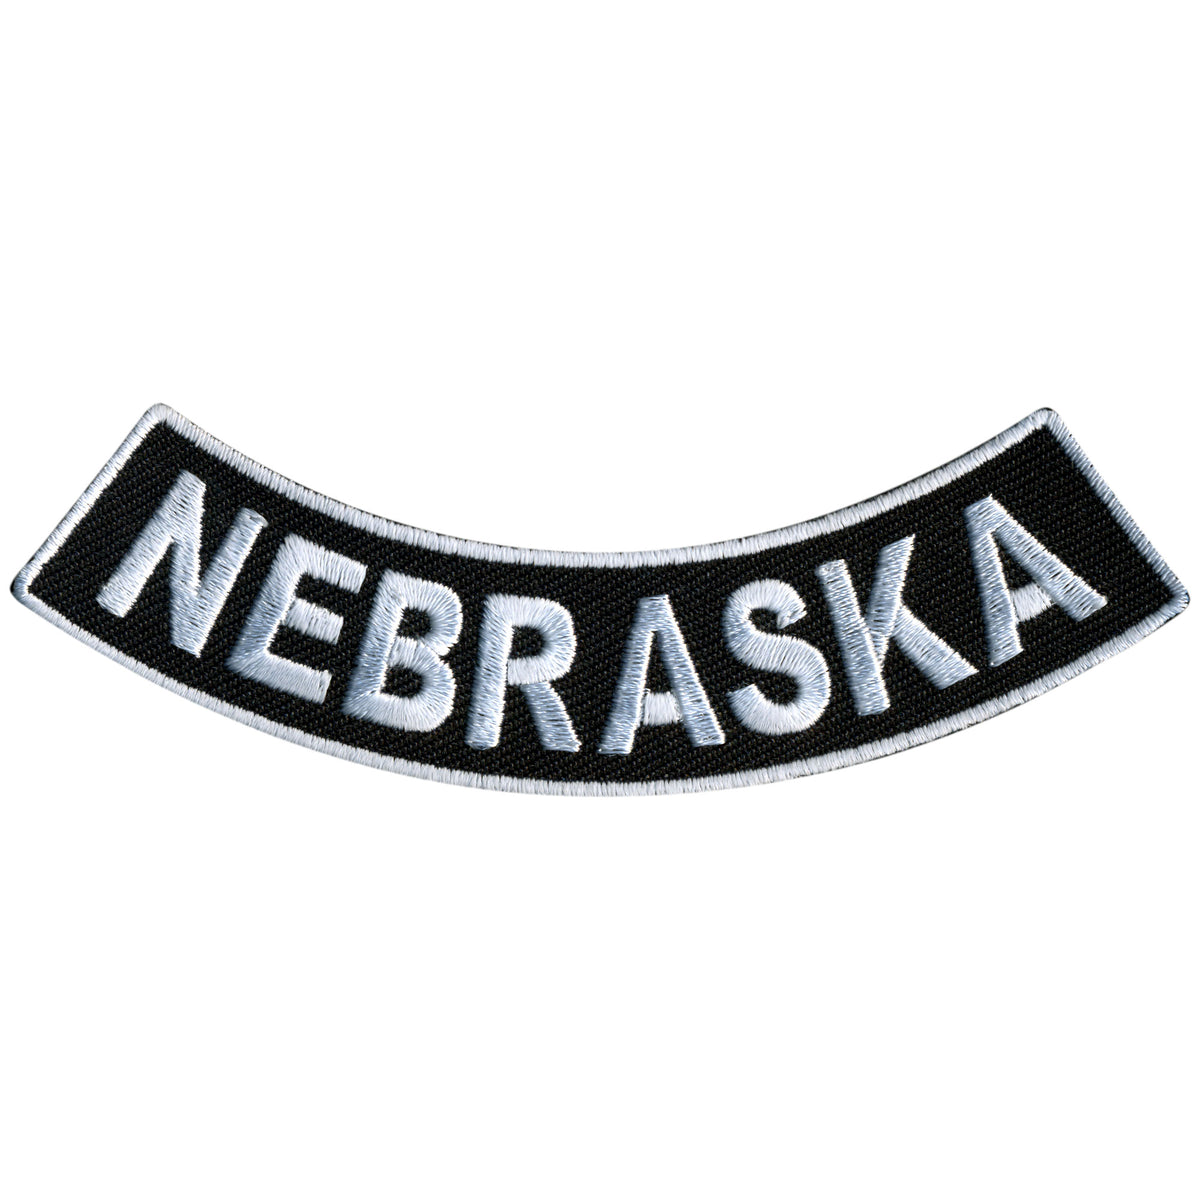 Hot Leathers Nebraska 4” X 1” Bottom Rocker Patch